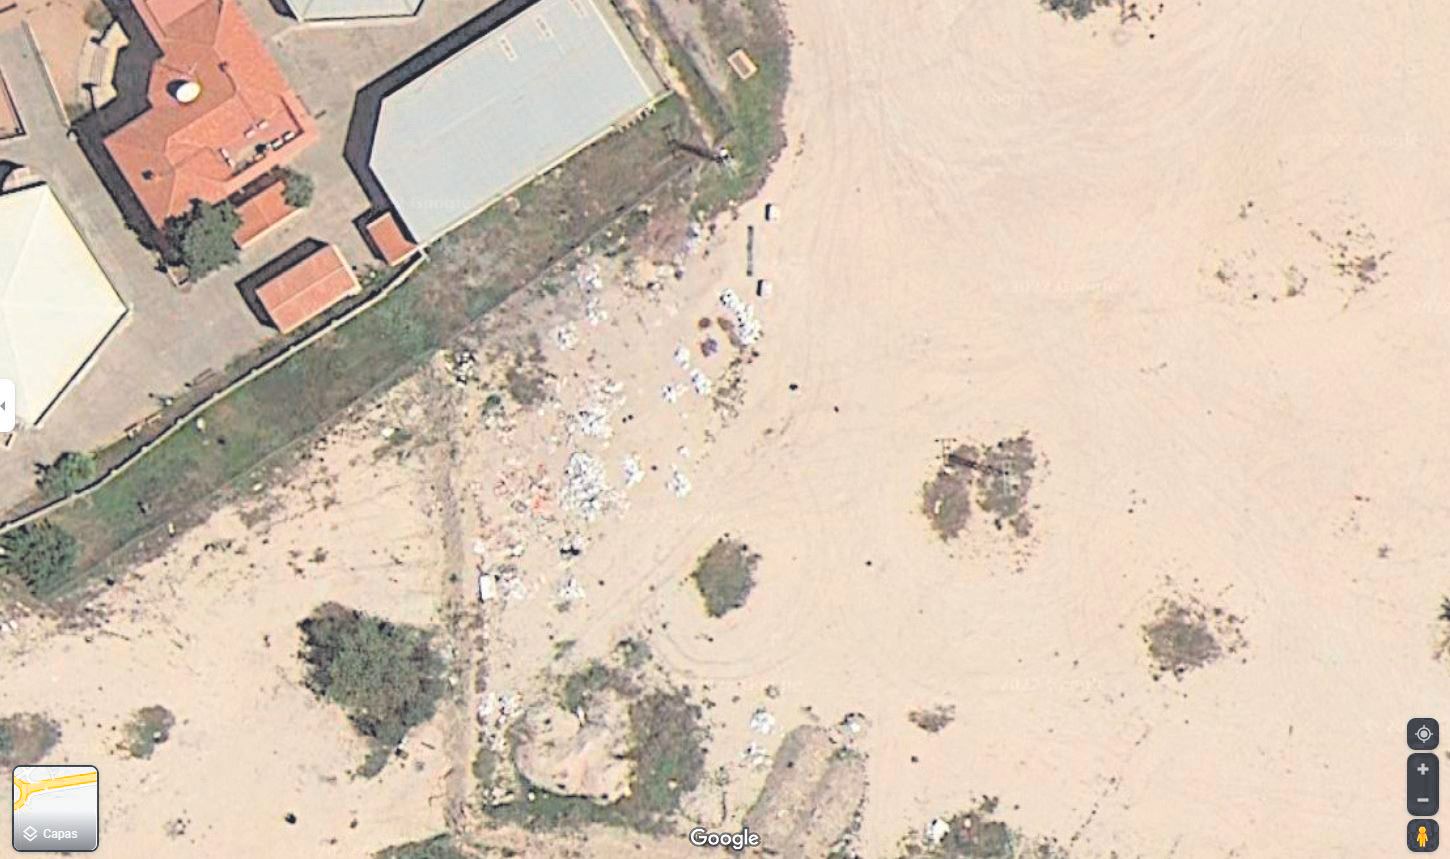 Imagen por satélite de la escombrera situada en una de las rotonda de acceso a Santa Faz, vista por Google Maps